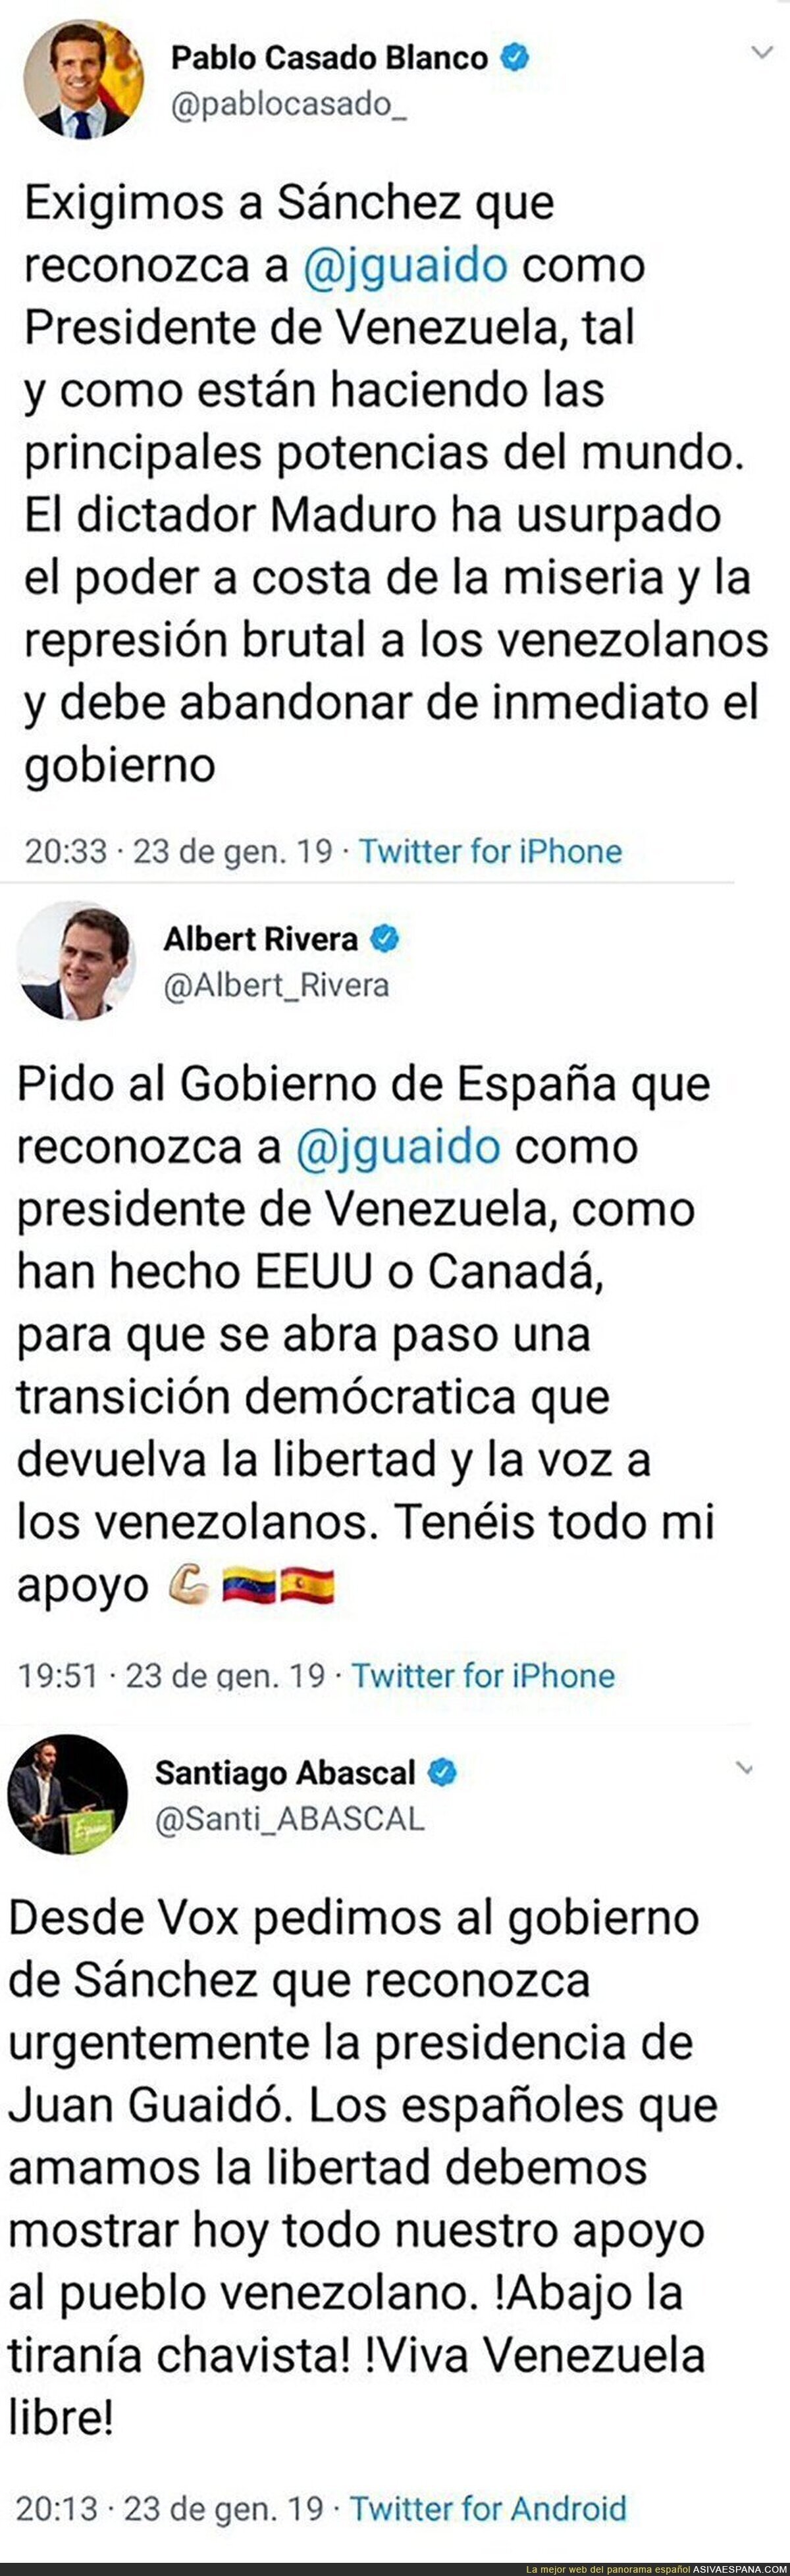 Así está el panorama del golpe de estado en Venezuela en España